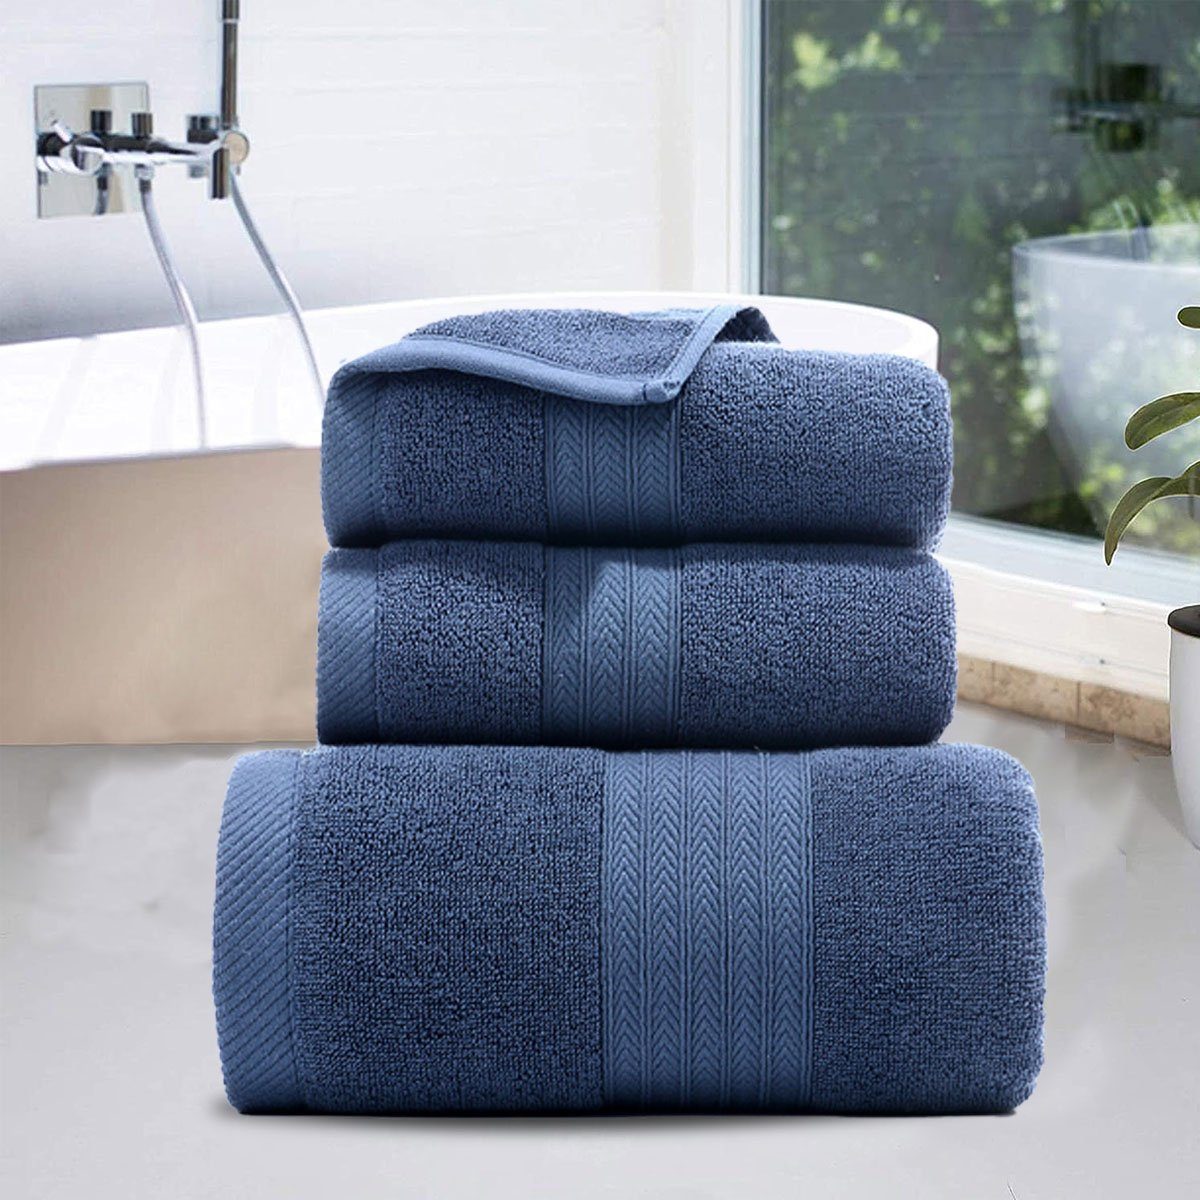 Hause Jormftte weich,für Handtuch zu und Set-2xHandtuch,1xBadetuch,saugfähig Blau Set Handtücher